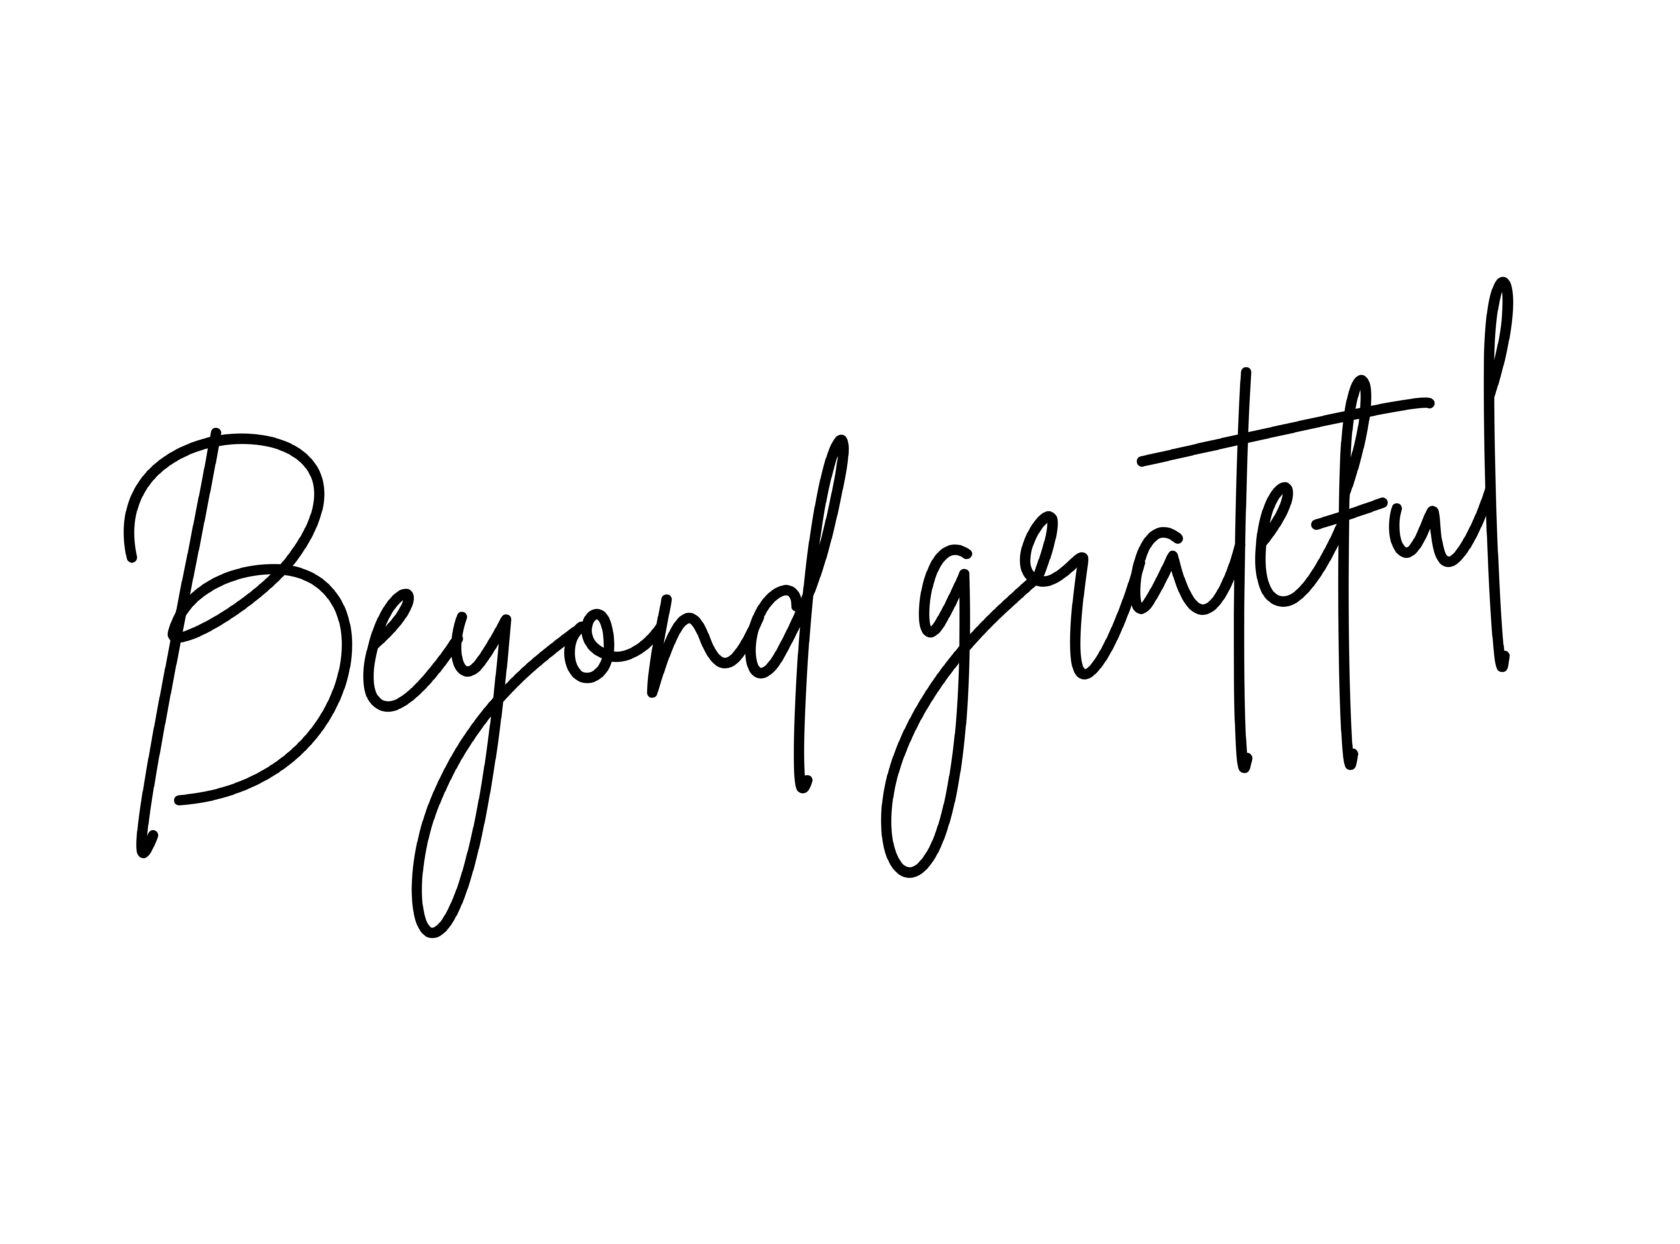 beyond grateful banner for blog post